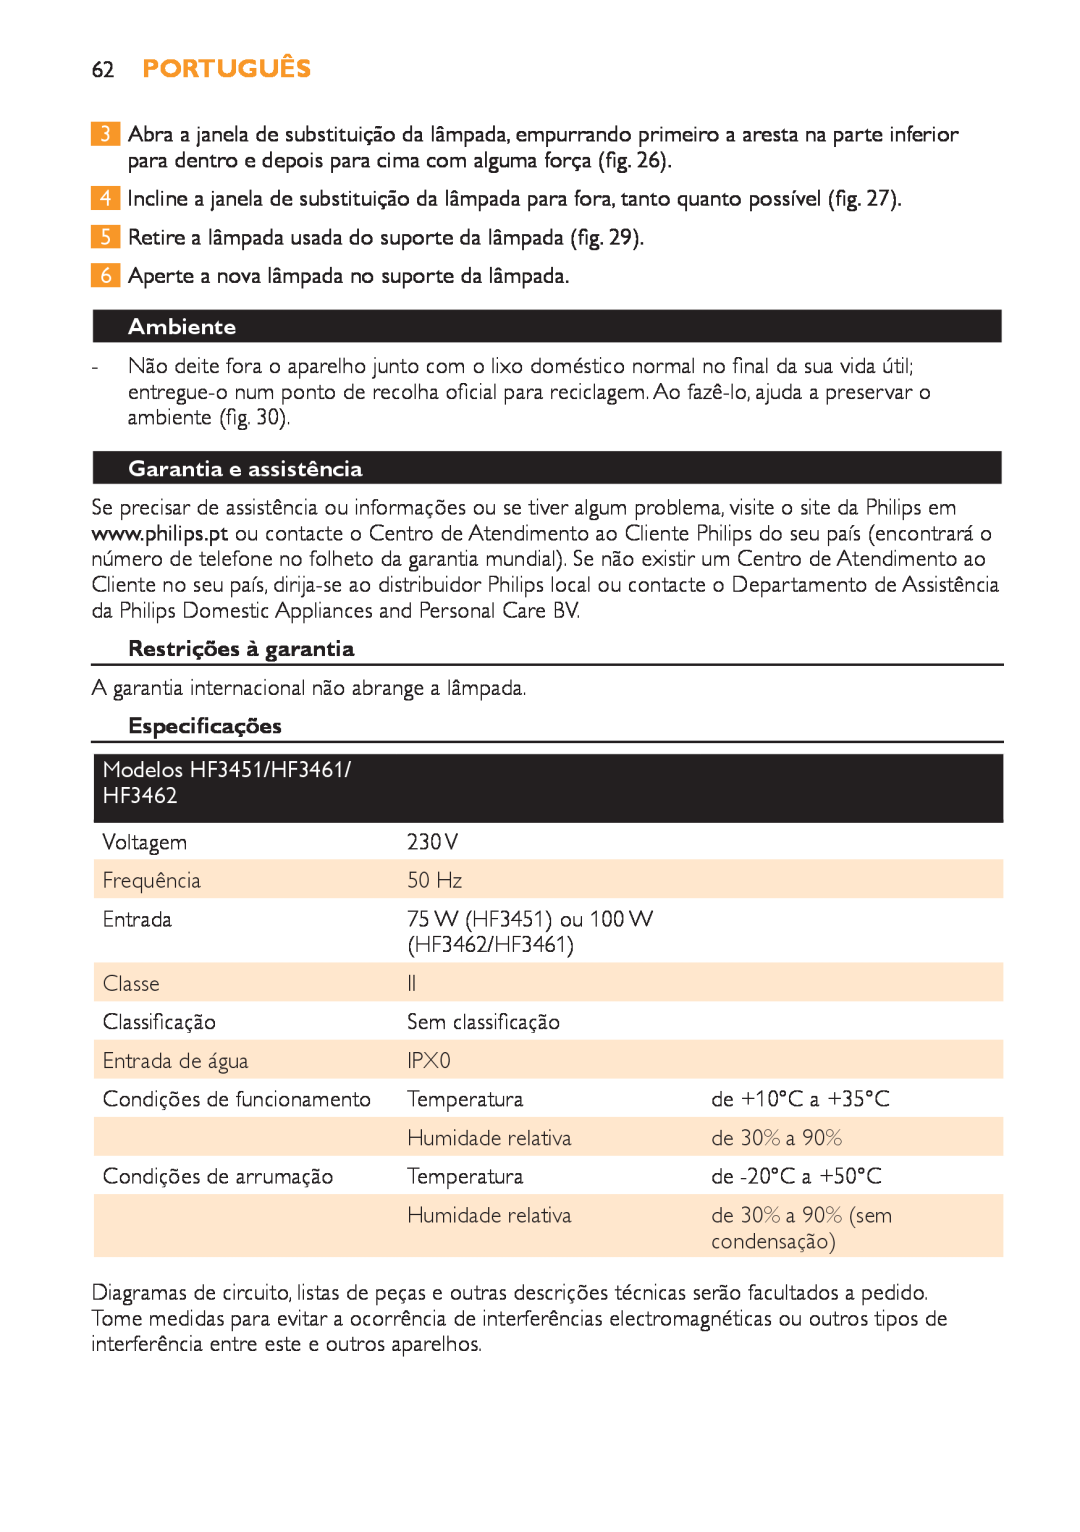 Philips HF3451 manual 62Português, Ambiente, Garantia e assistência, Restrições à garantia, Especificações 